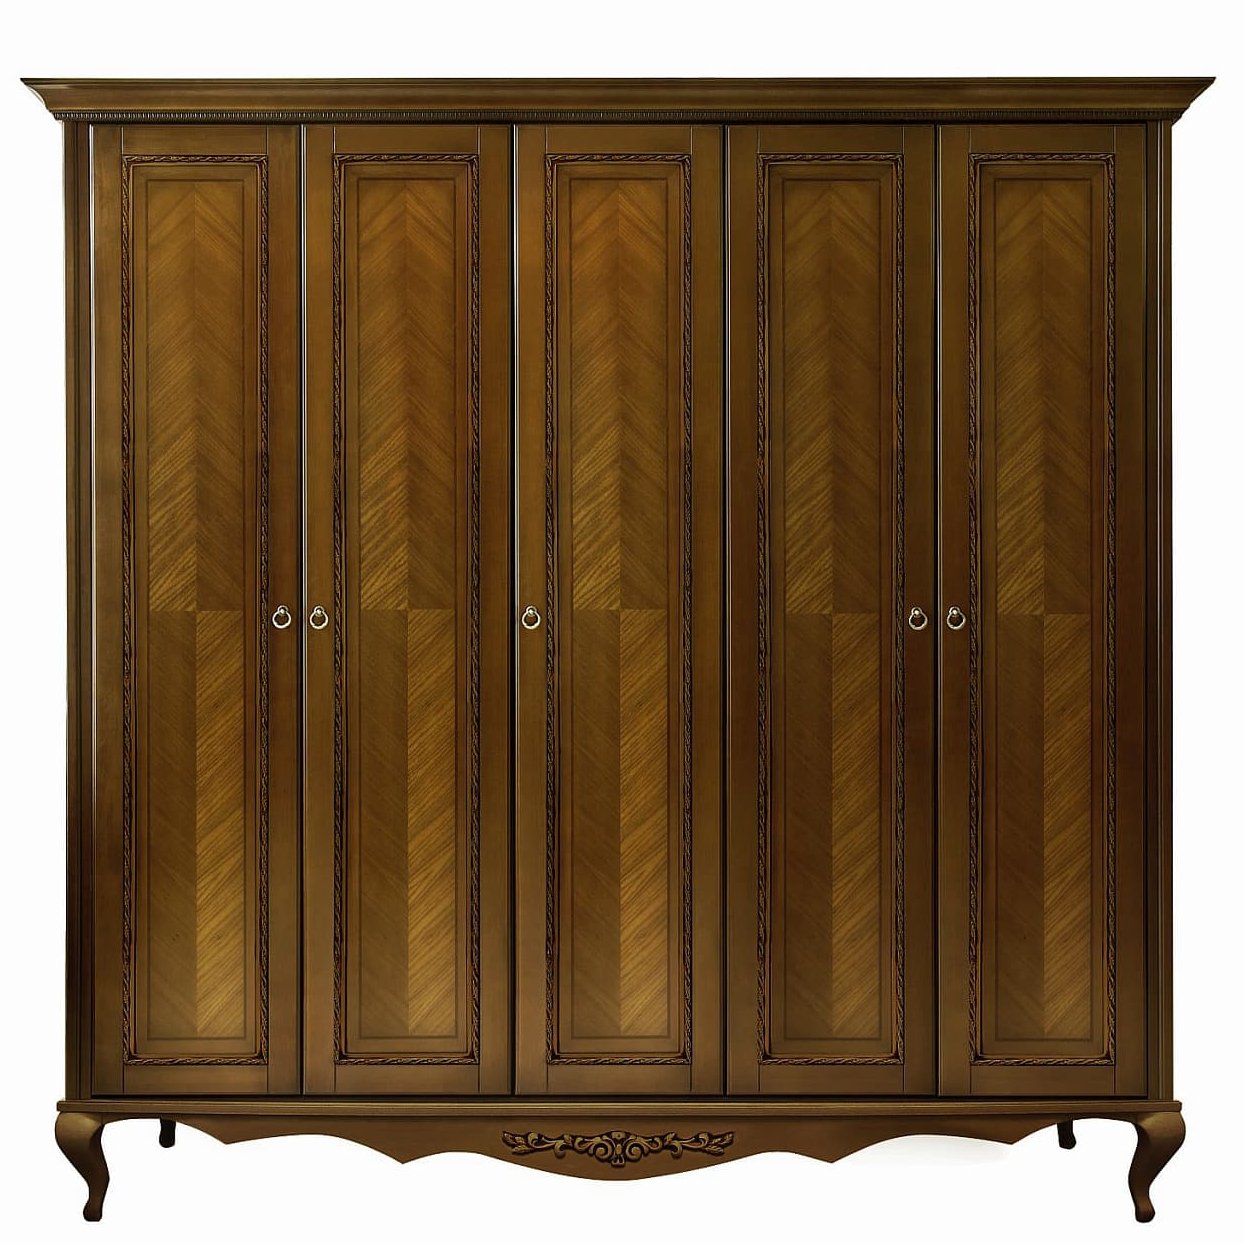 Шкаф платяной Timber Неаполь, 5-ти дверный 249x65x227 см, цвет: орех (Т-525Д/N)Т-525Д